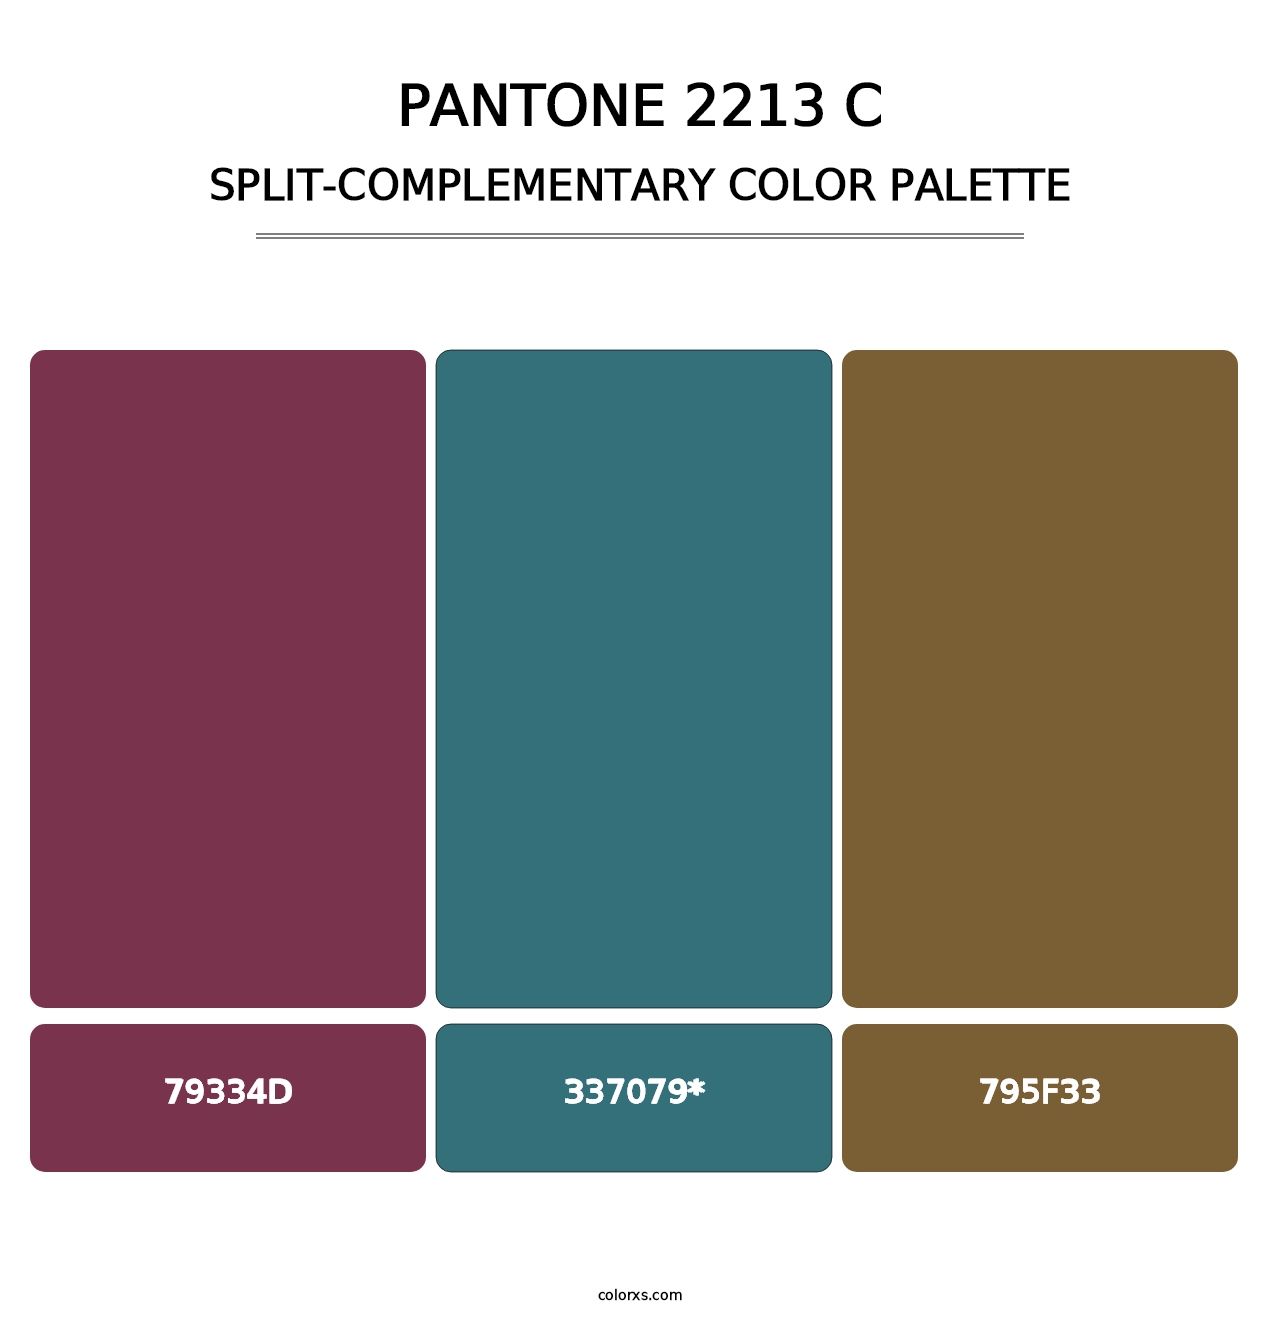 PANTONE 2213 C - Split-Complementary Color Palette